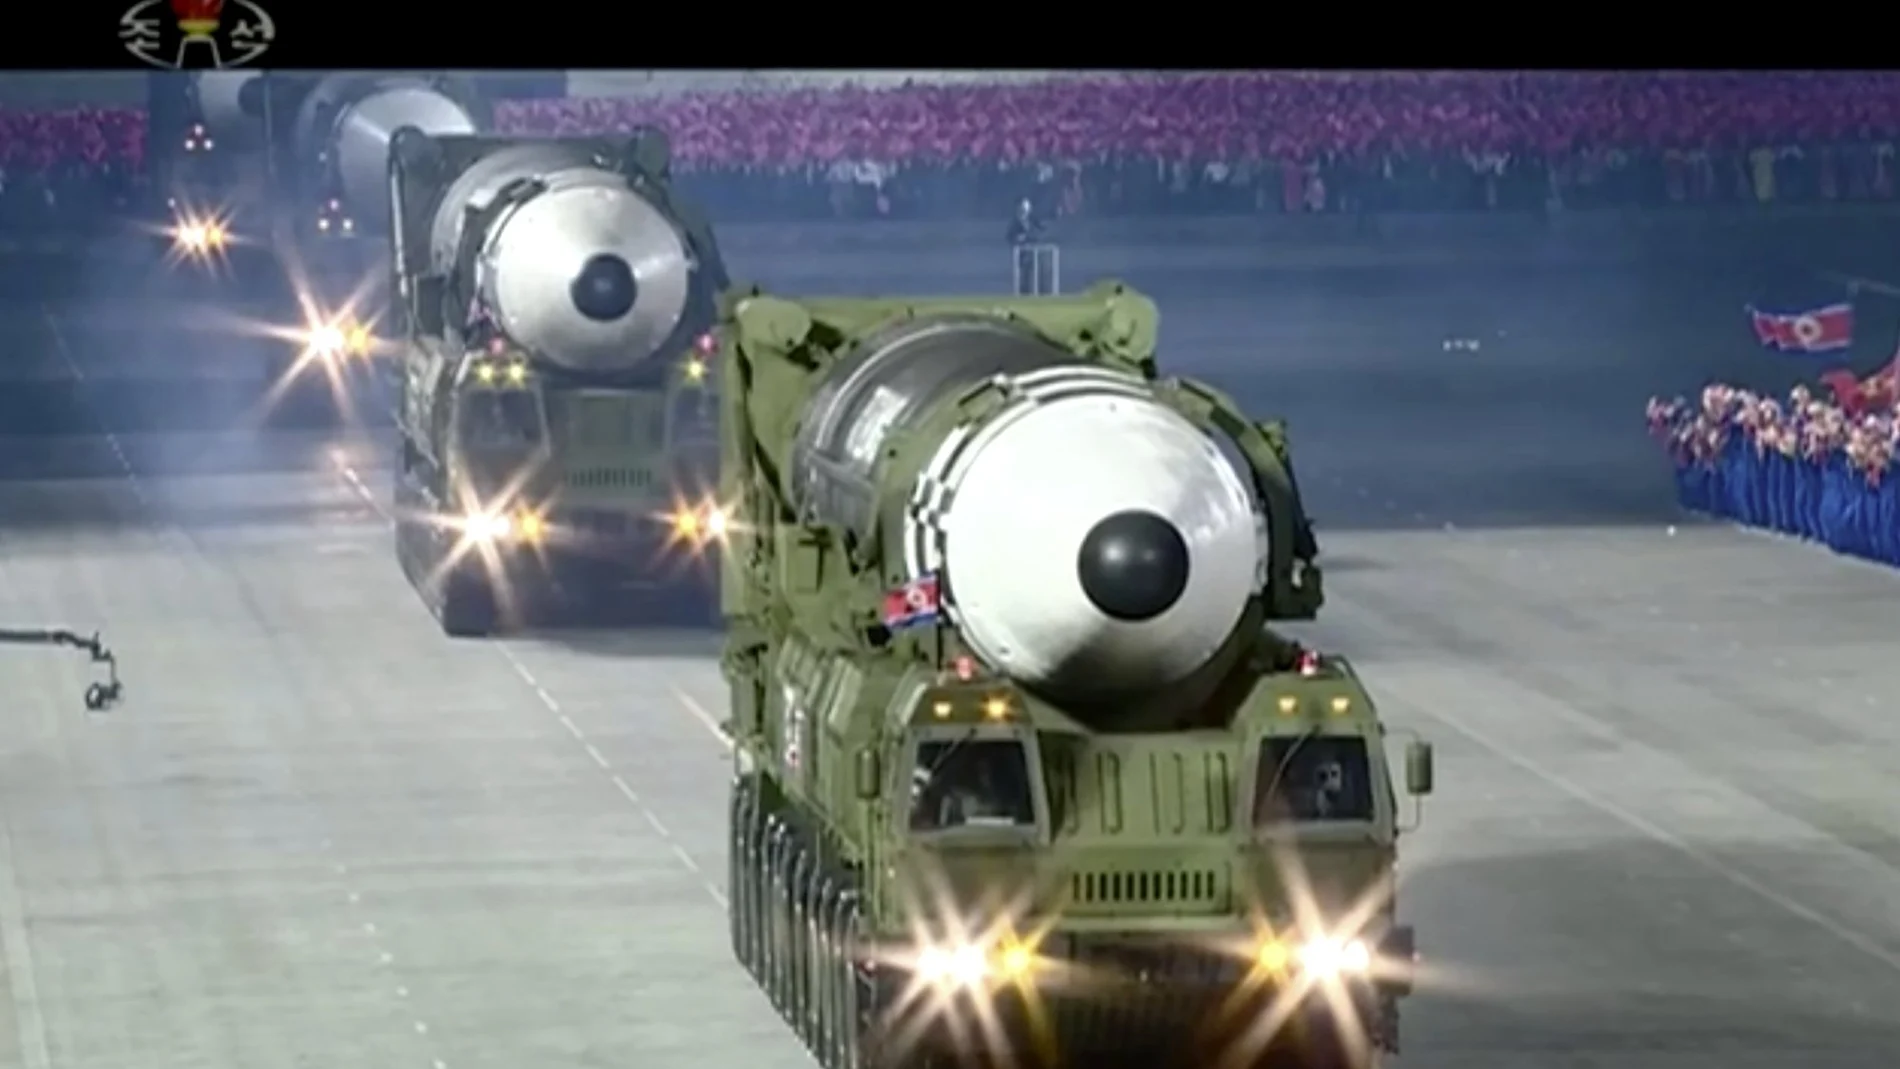 El misil intercontinental presentado en un desfile nocturno medido al milímetro por el régimen norcoreano de Kim Jong Un